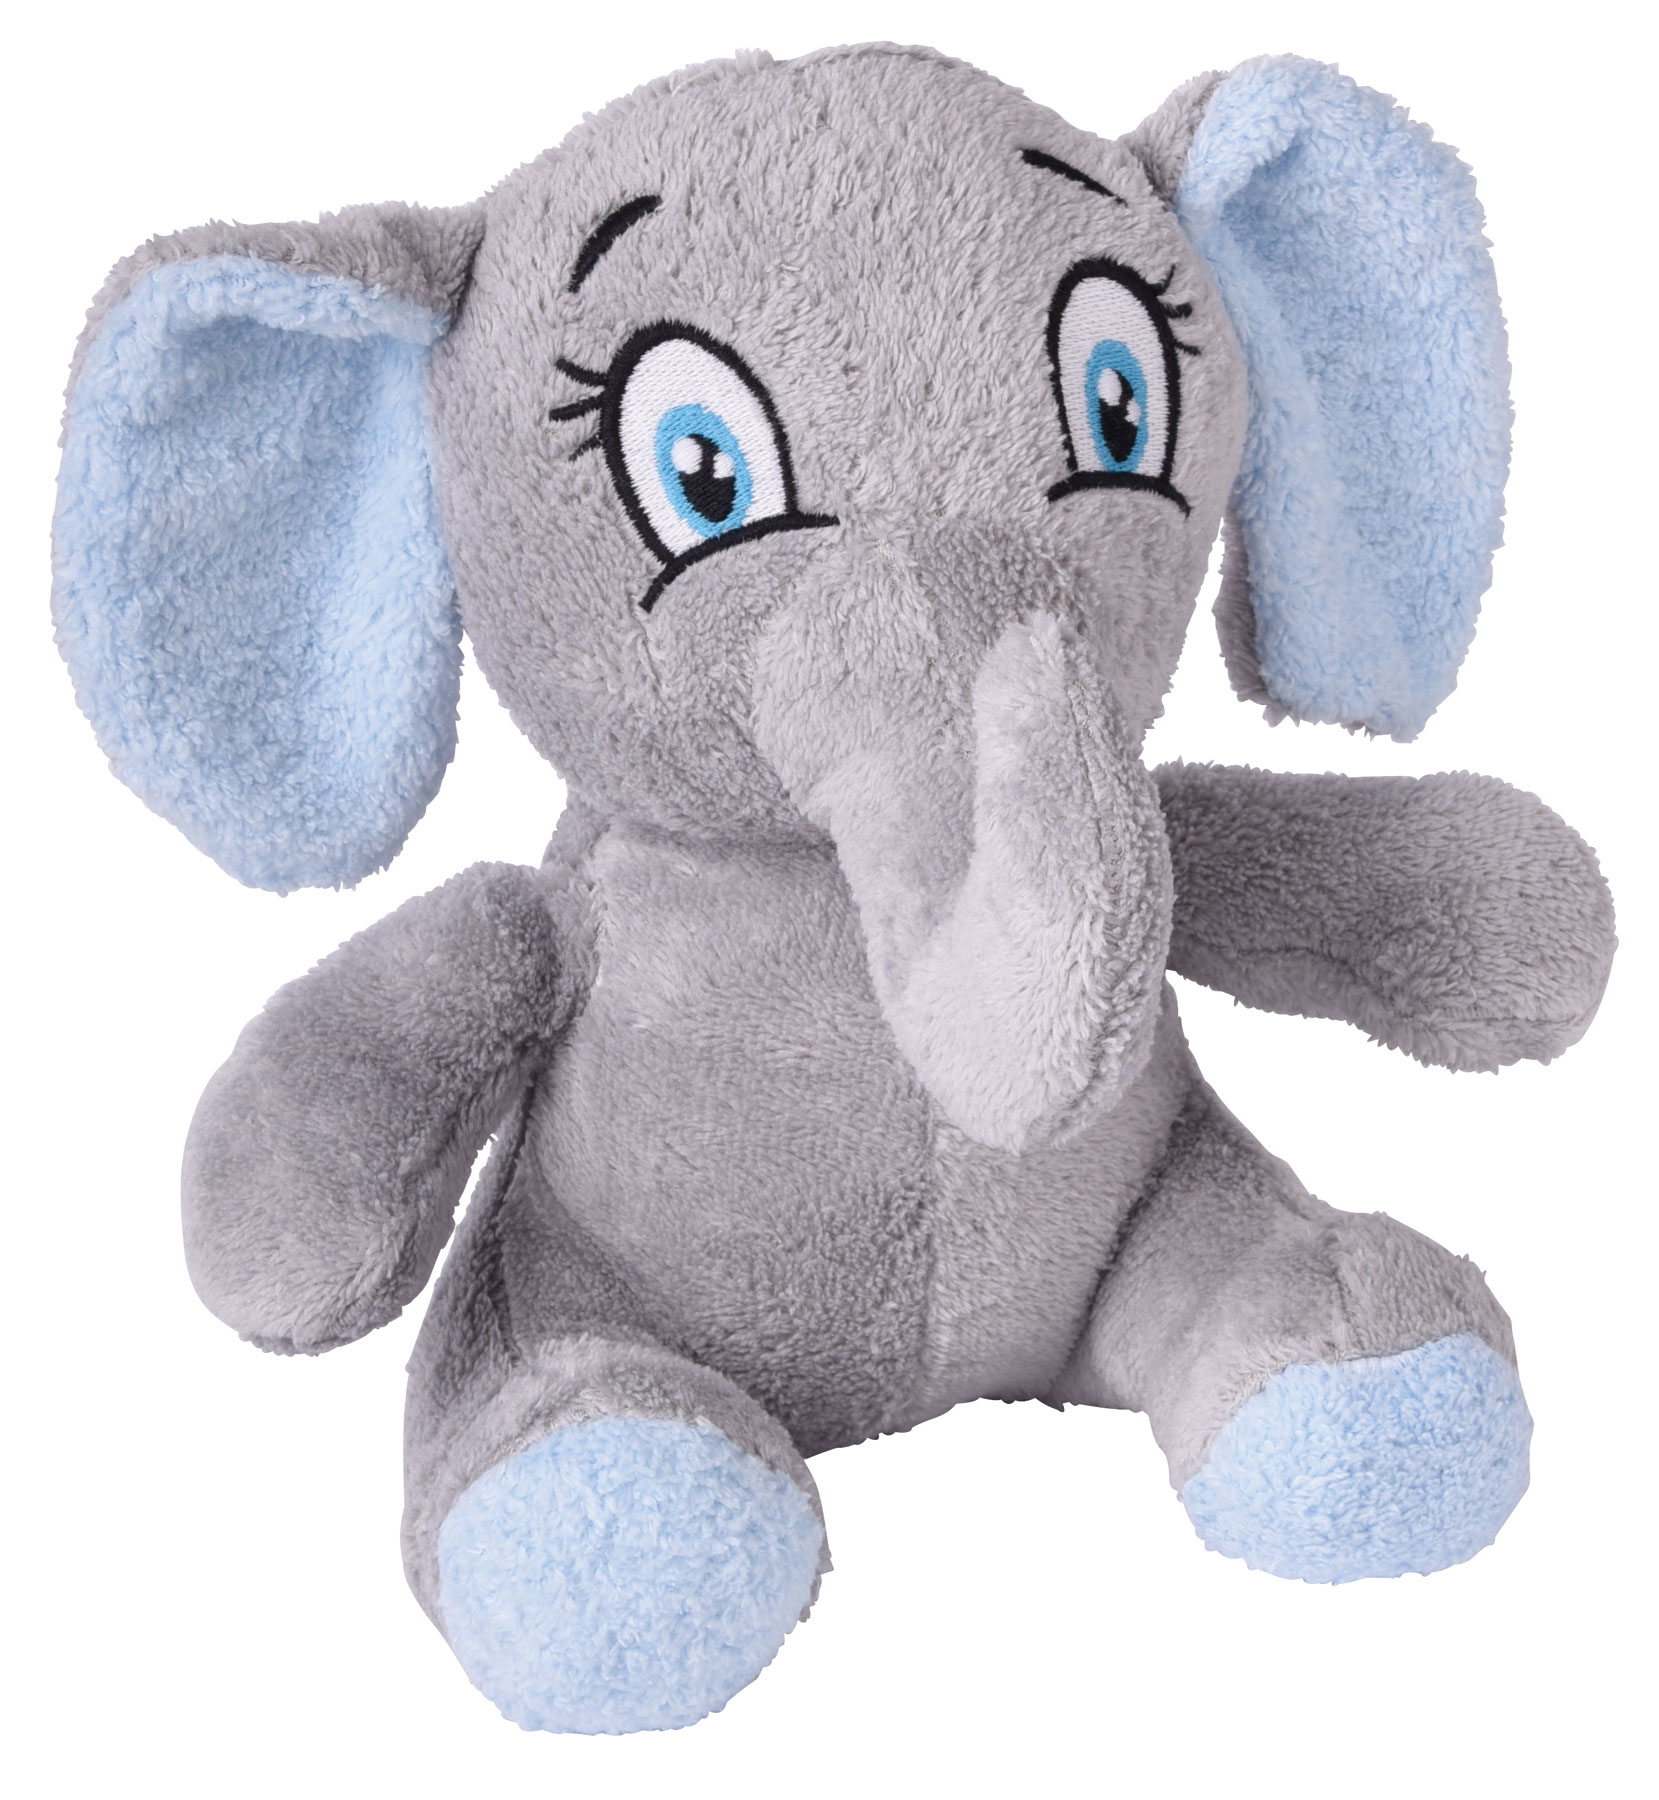 Plush elephant MALIK - grey